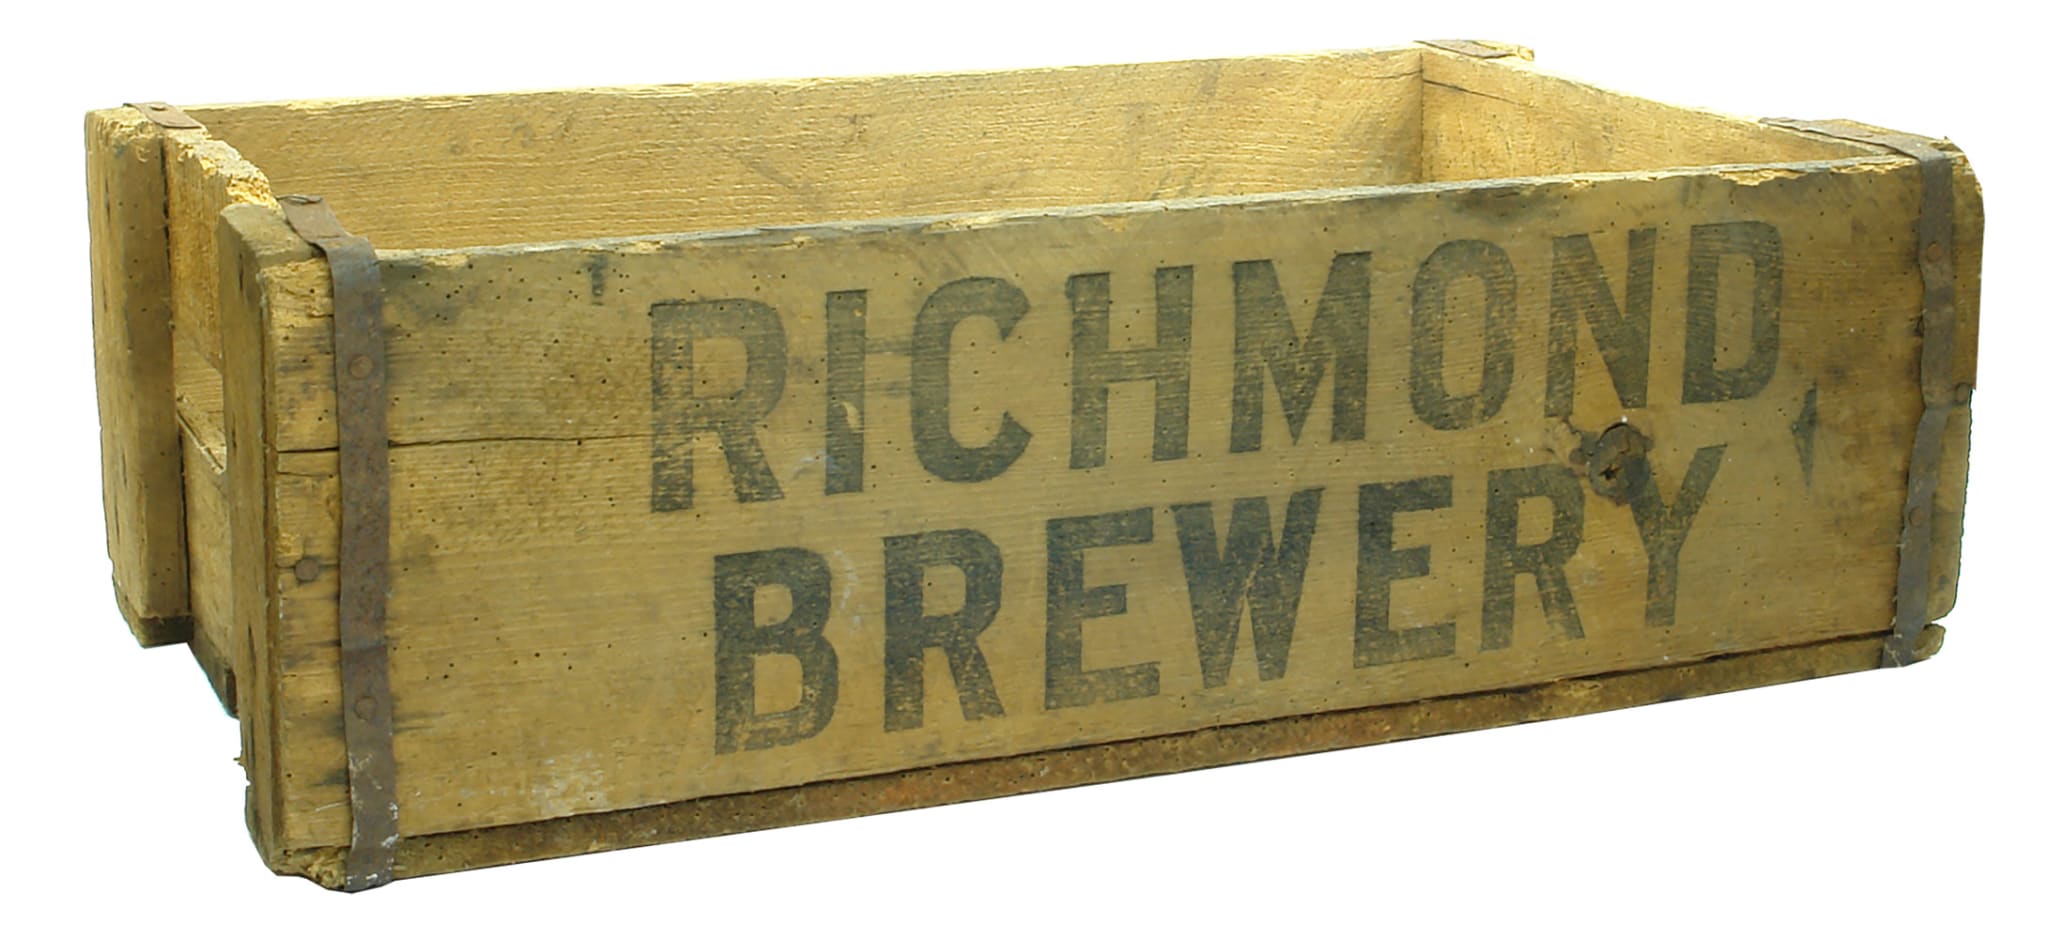 Richmond Brewery Vintage Beer Bottle Case